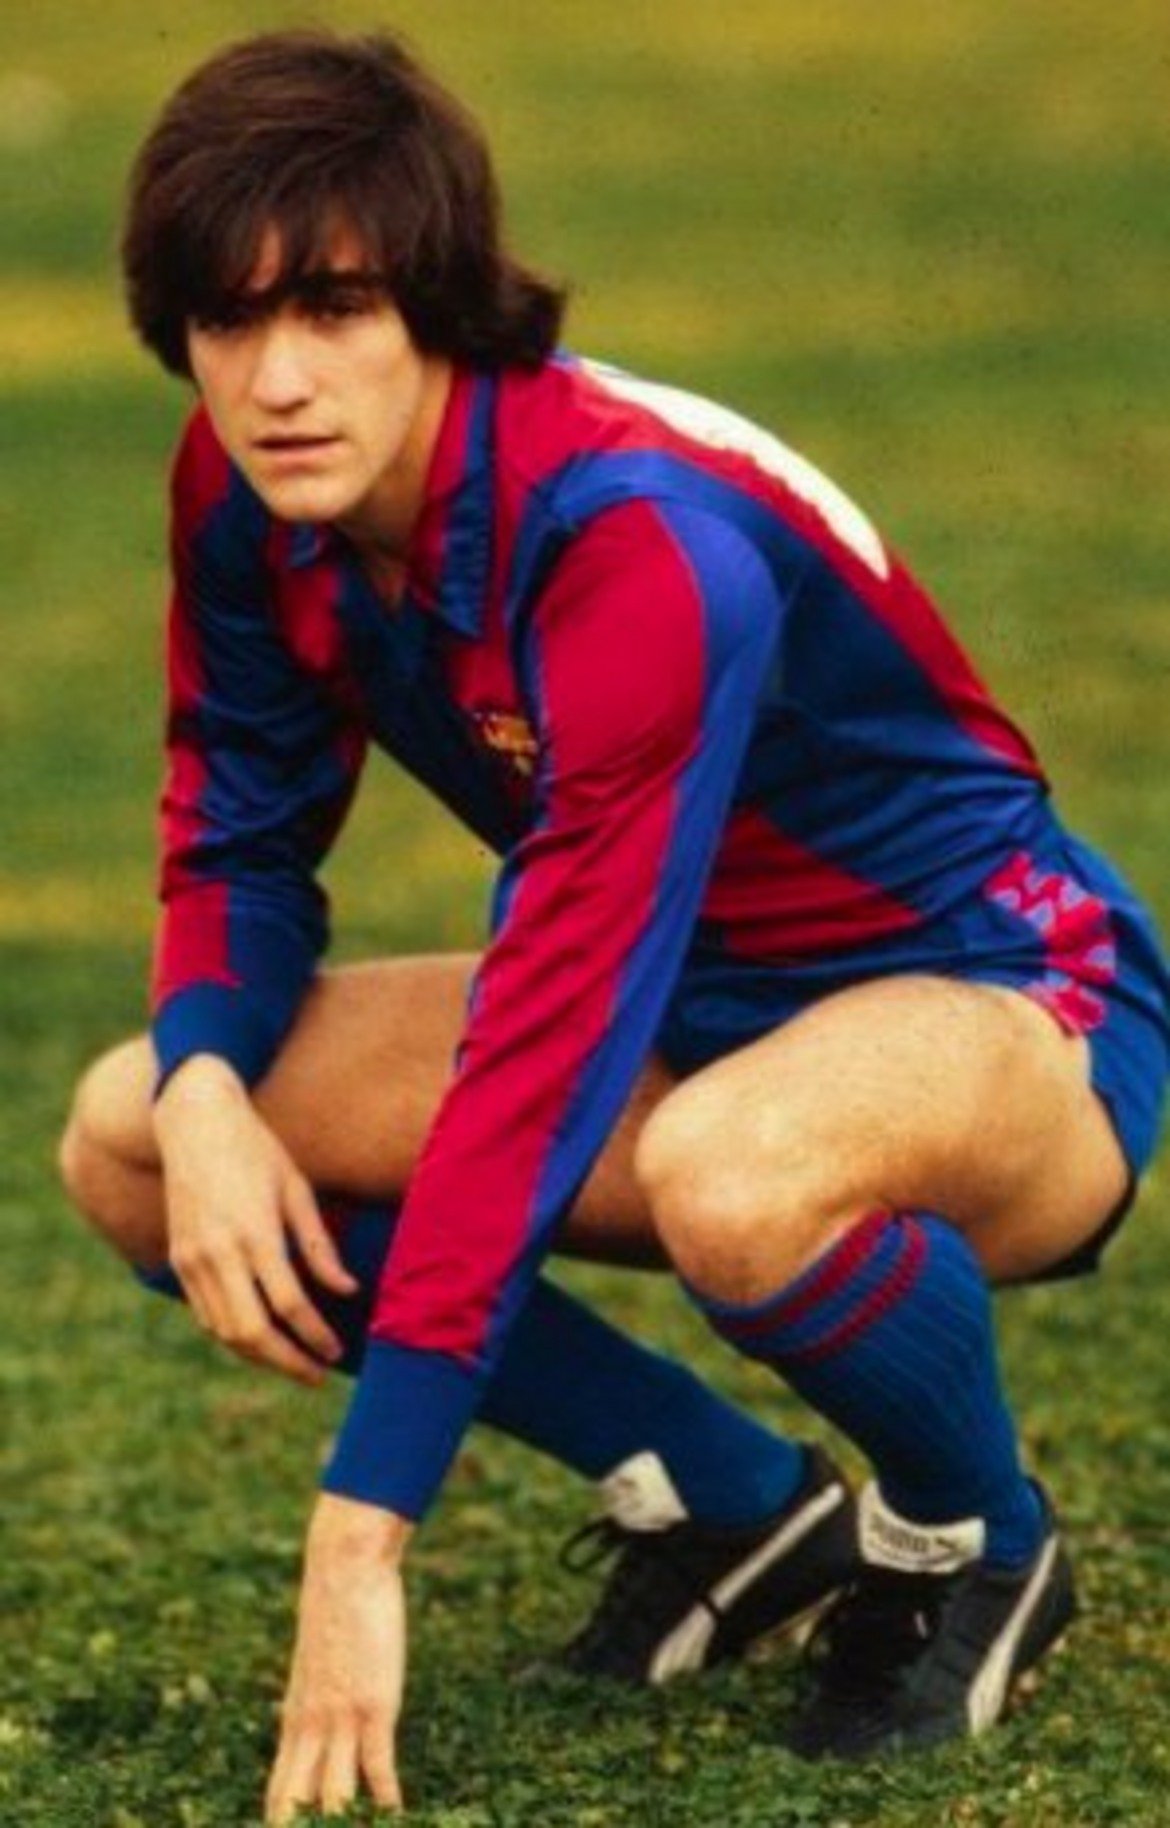 Маркос Алонсо Пеня също е продукт на академията на Расинг, след което играе пет години за Атлетико Мадрид, а през 1982-ра се превръща в най-скъпия испанец, когато Барселона плаща за него 150 милиона песети.

